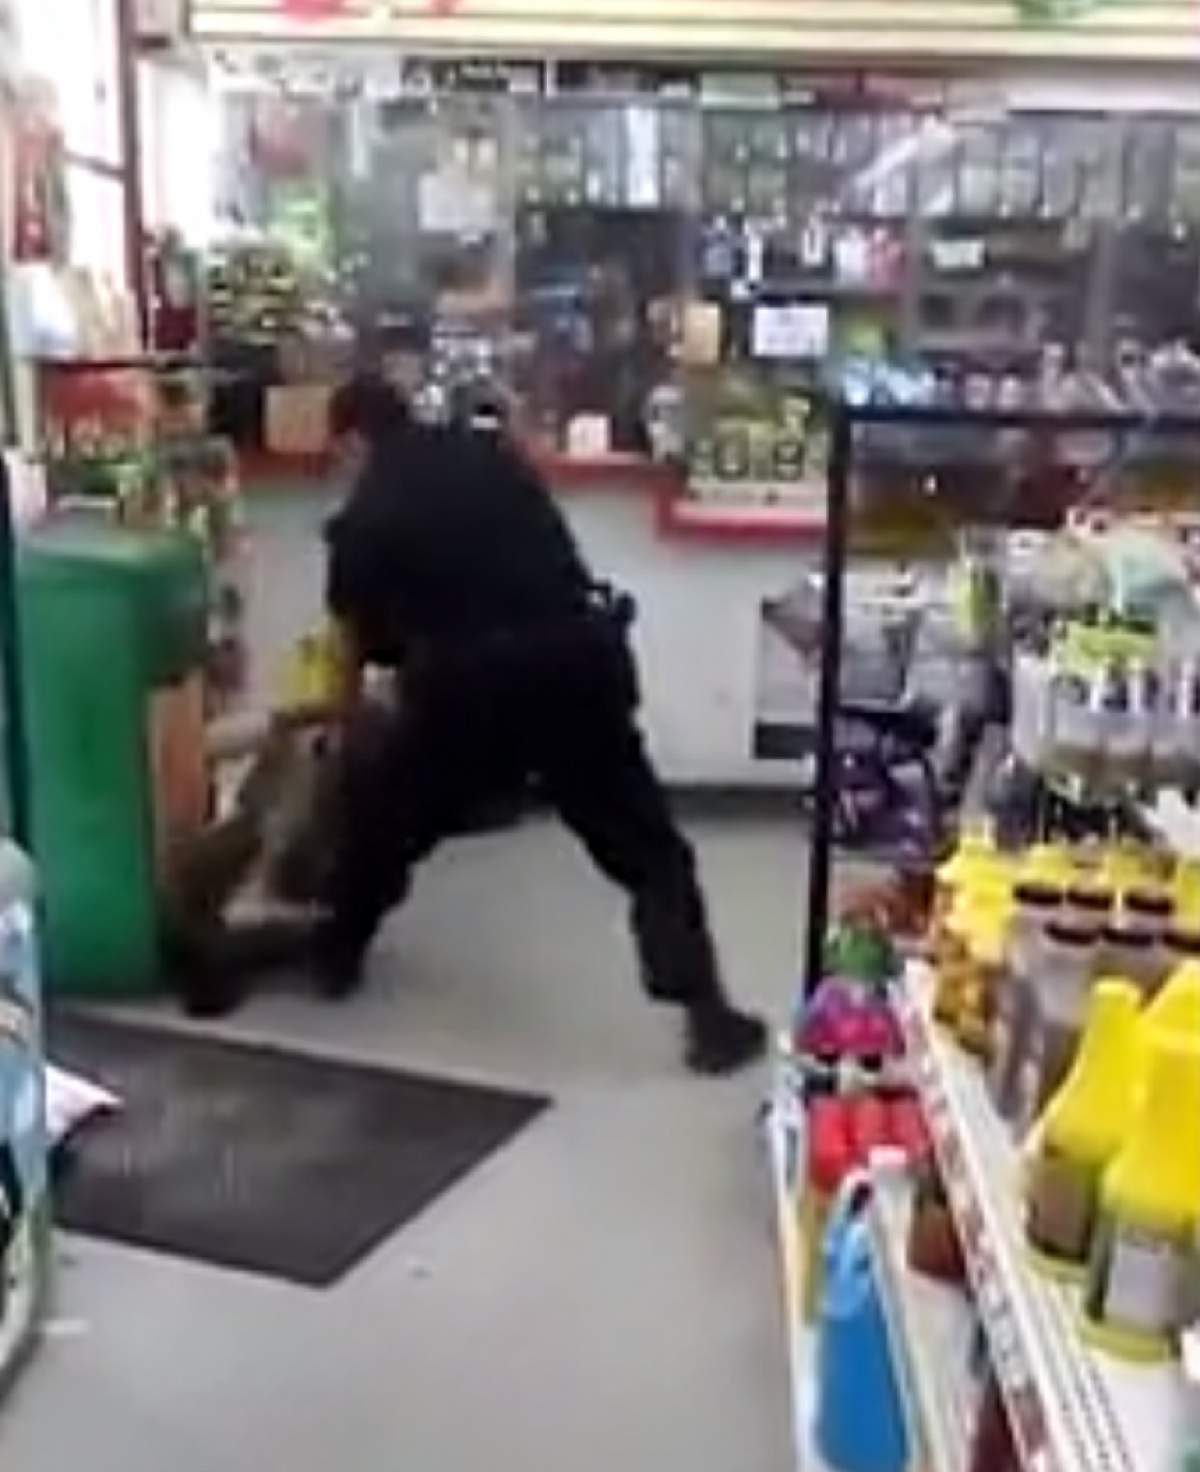 VIDEO / Un polițist lovește cu brutalitate un om al străzii! Imaginile sunt greu de privit